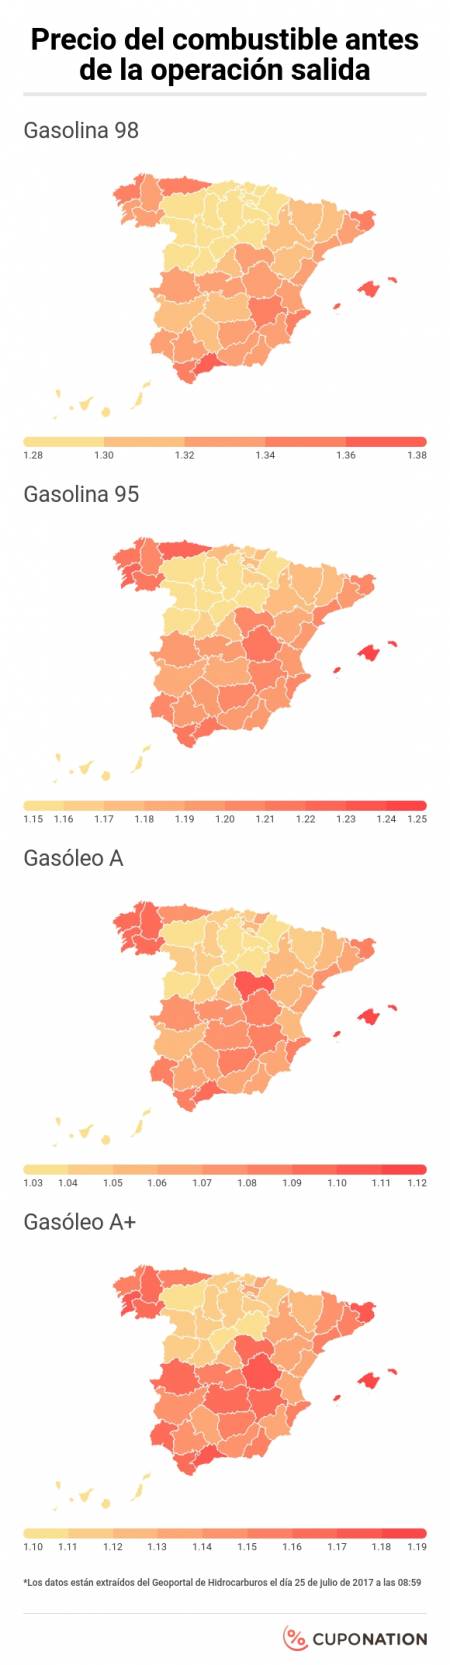 Precio combustible en Espana 4